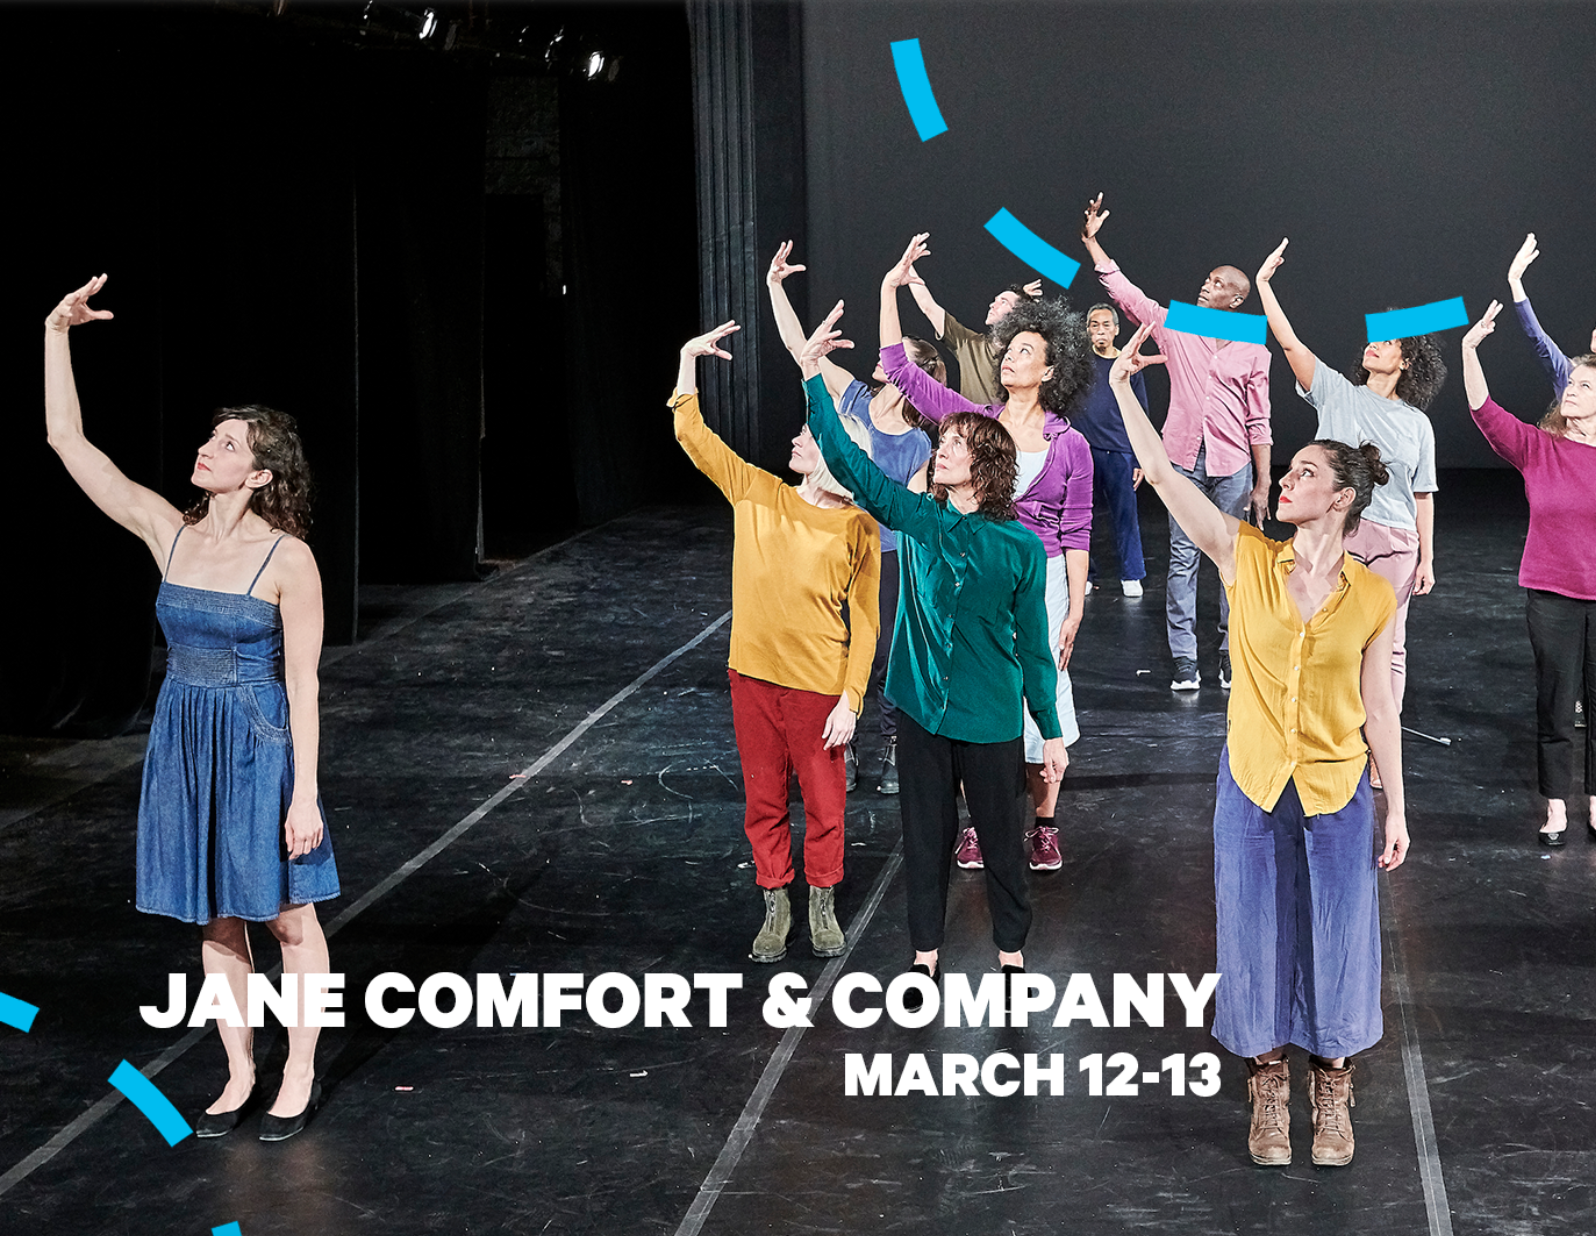 Jane Comfort & Company